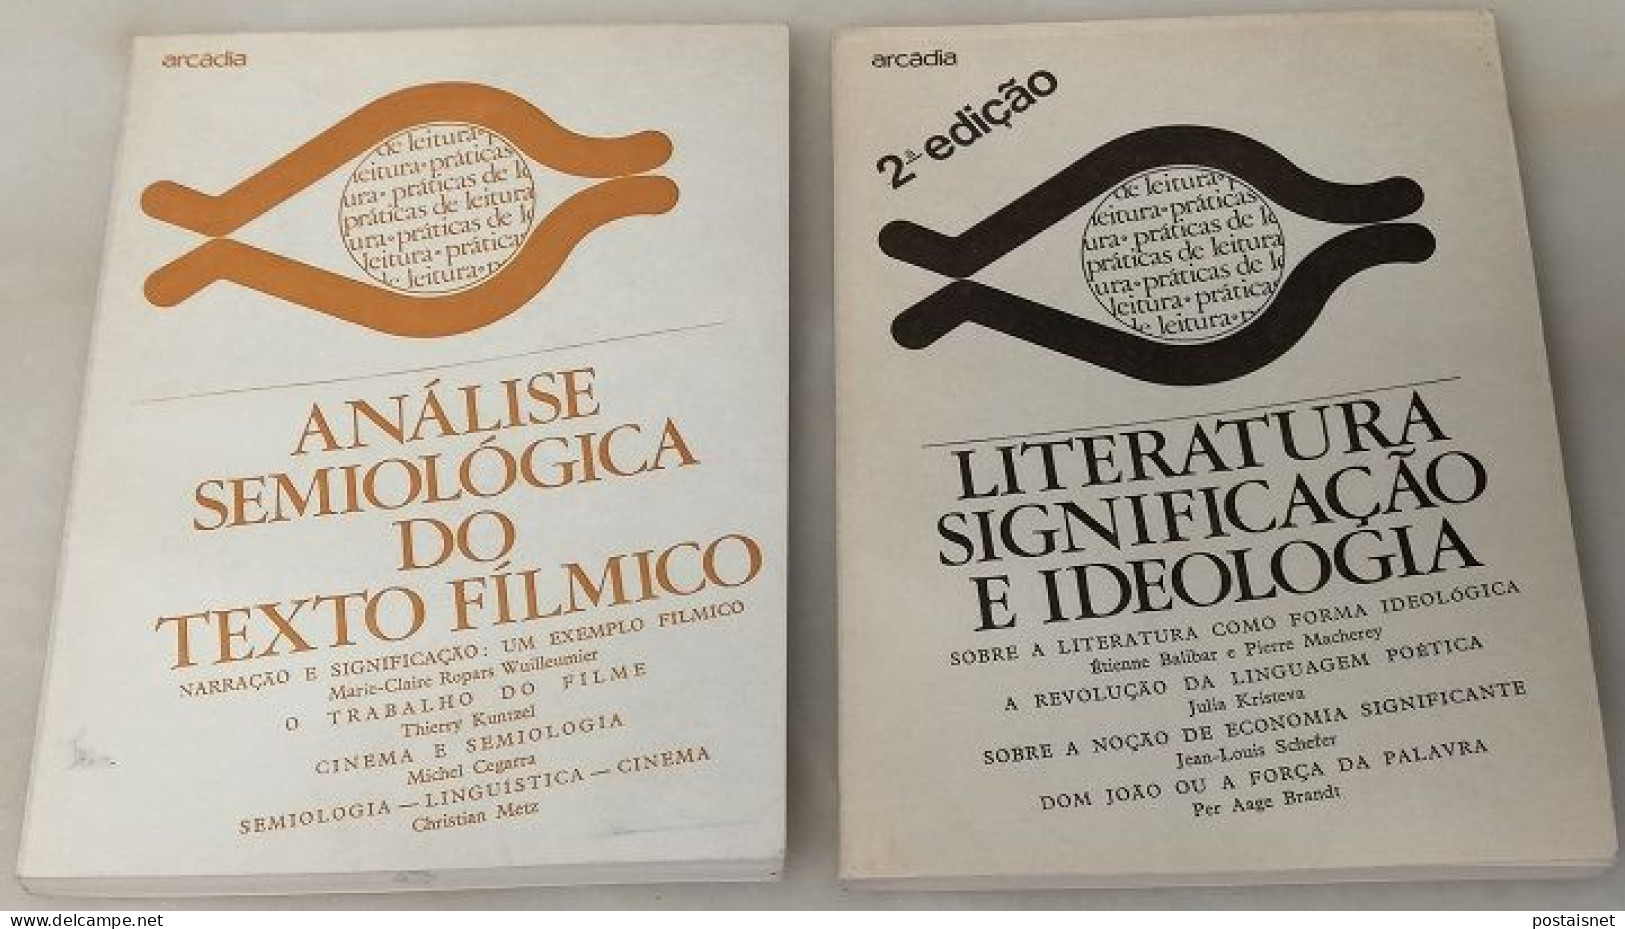 Análise Semiológica Do Texto Fílmico E Literatura Significação E Ideologia - Arcádia - Cultura